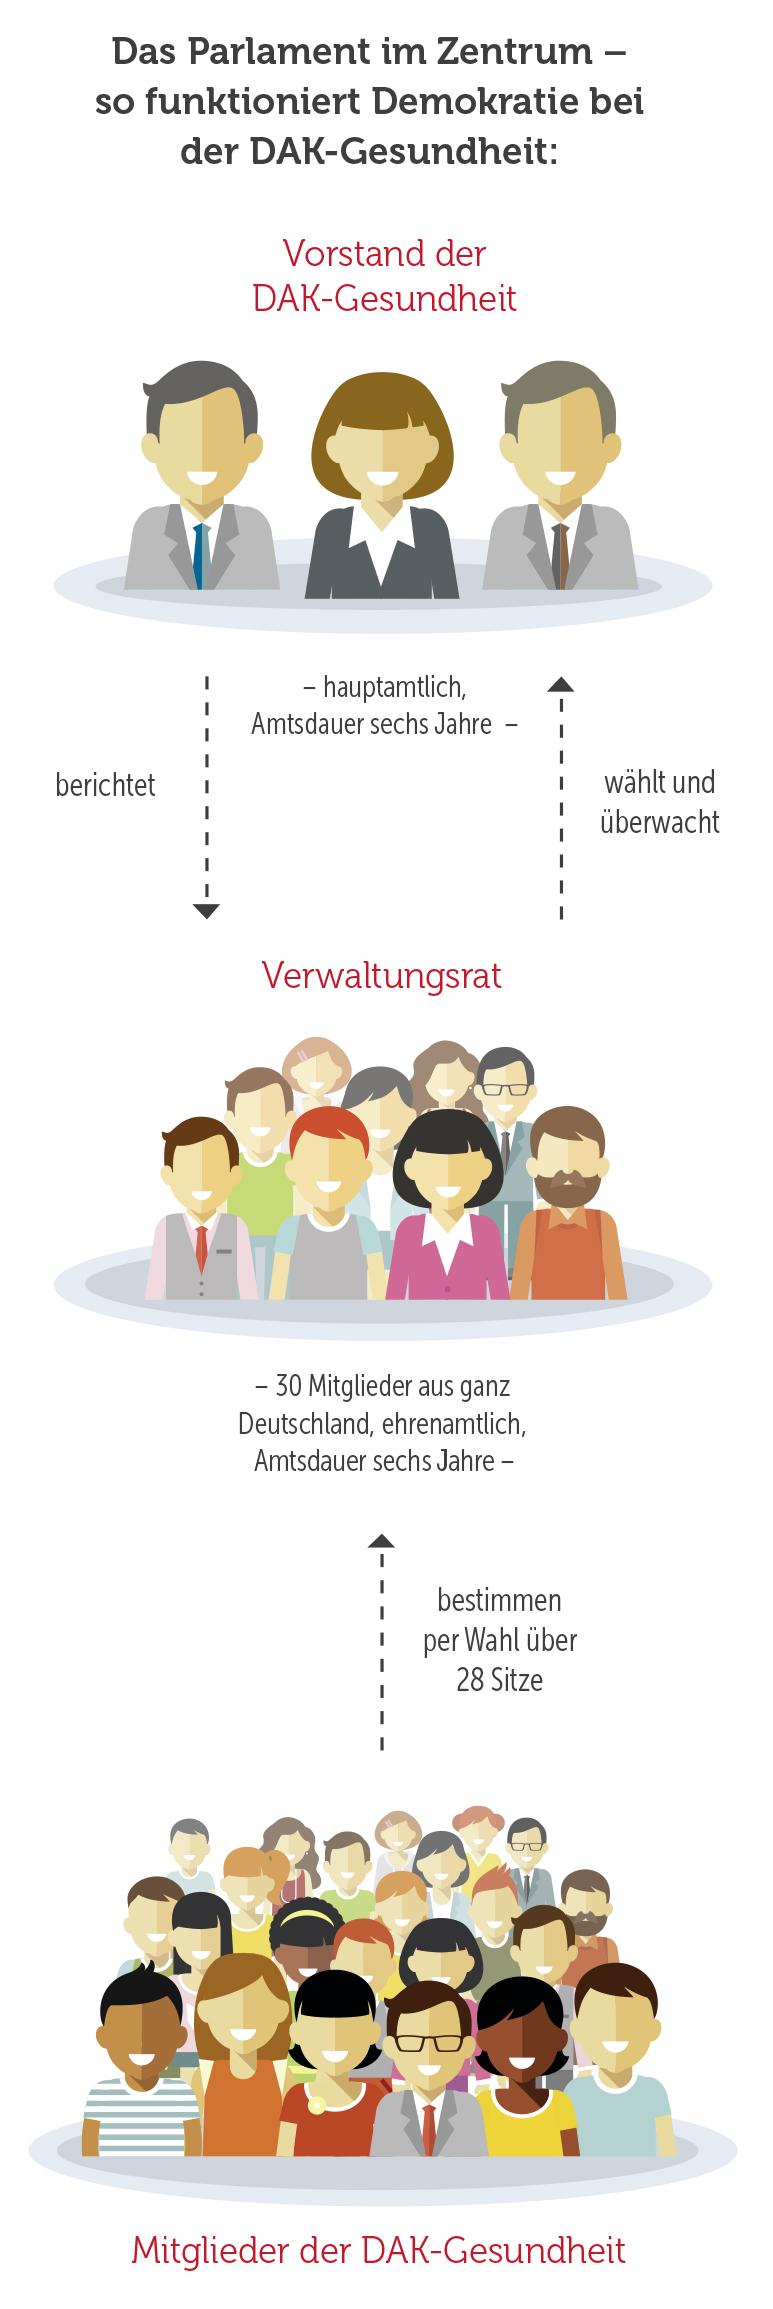 Eine Infografik, die die Aufgaben des Verwaltungsrats der DAK-Gesundheit erklärt